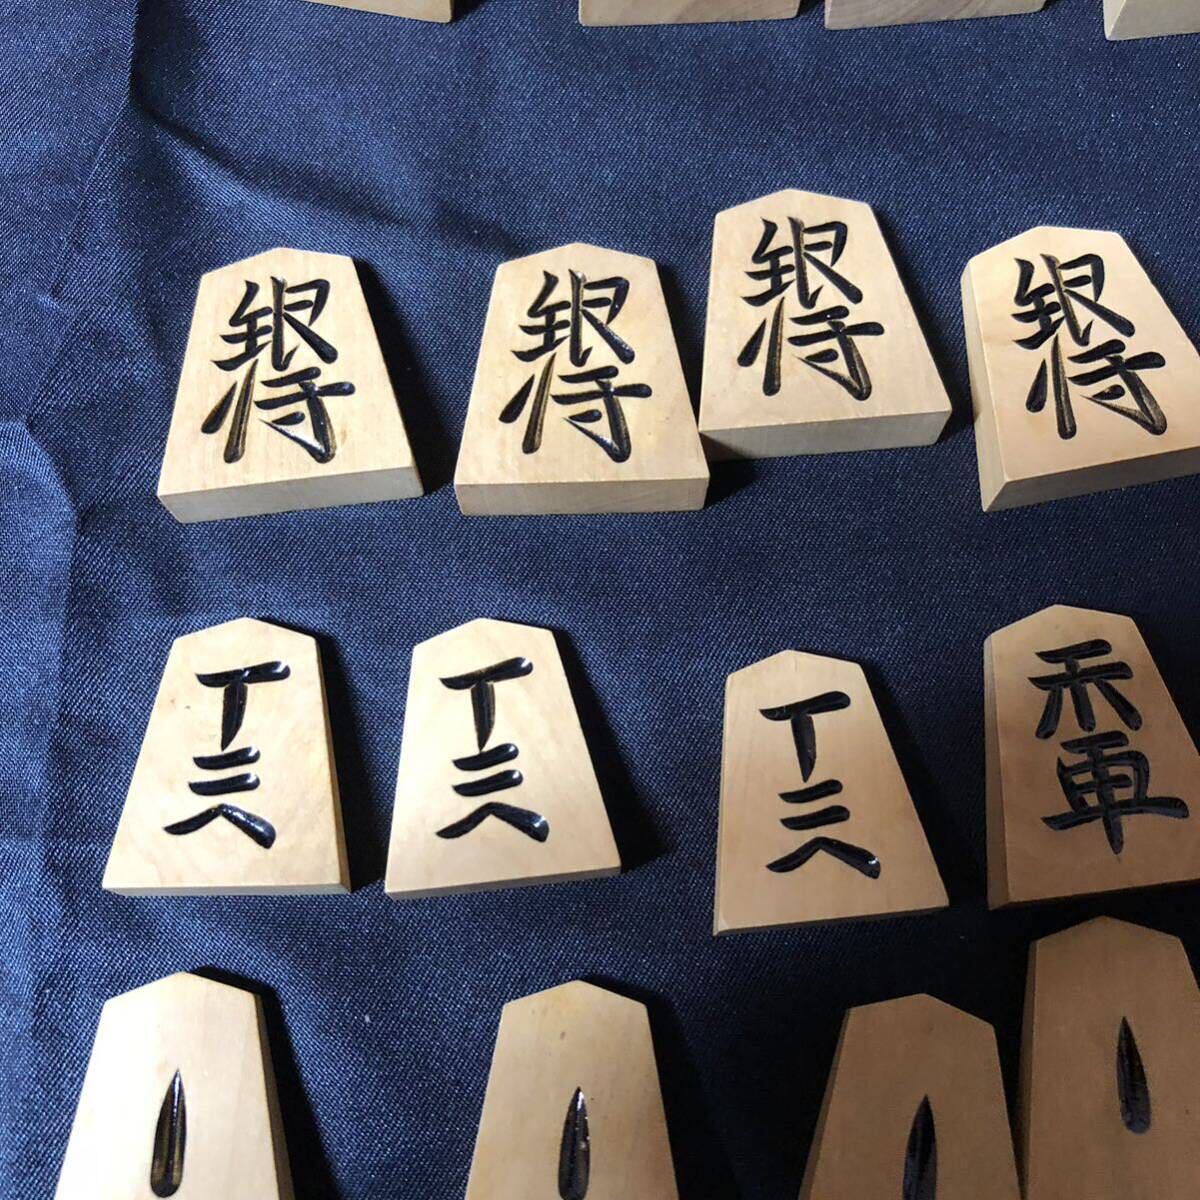  ястреб гора произведение shogi пешка .19 листов небо . Special производство с ящиком 1 иен старт 